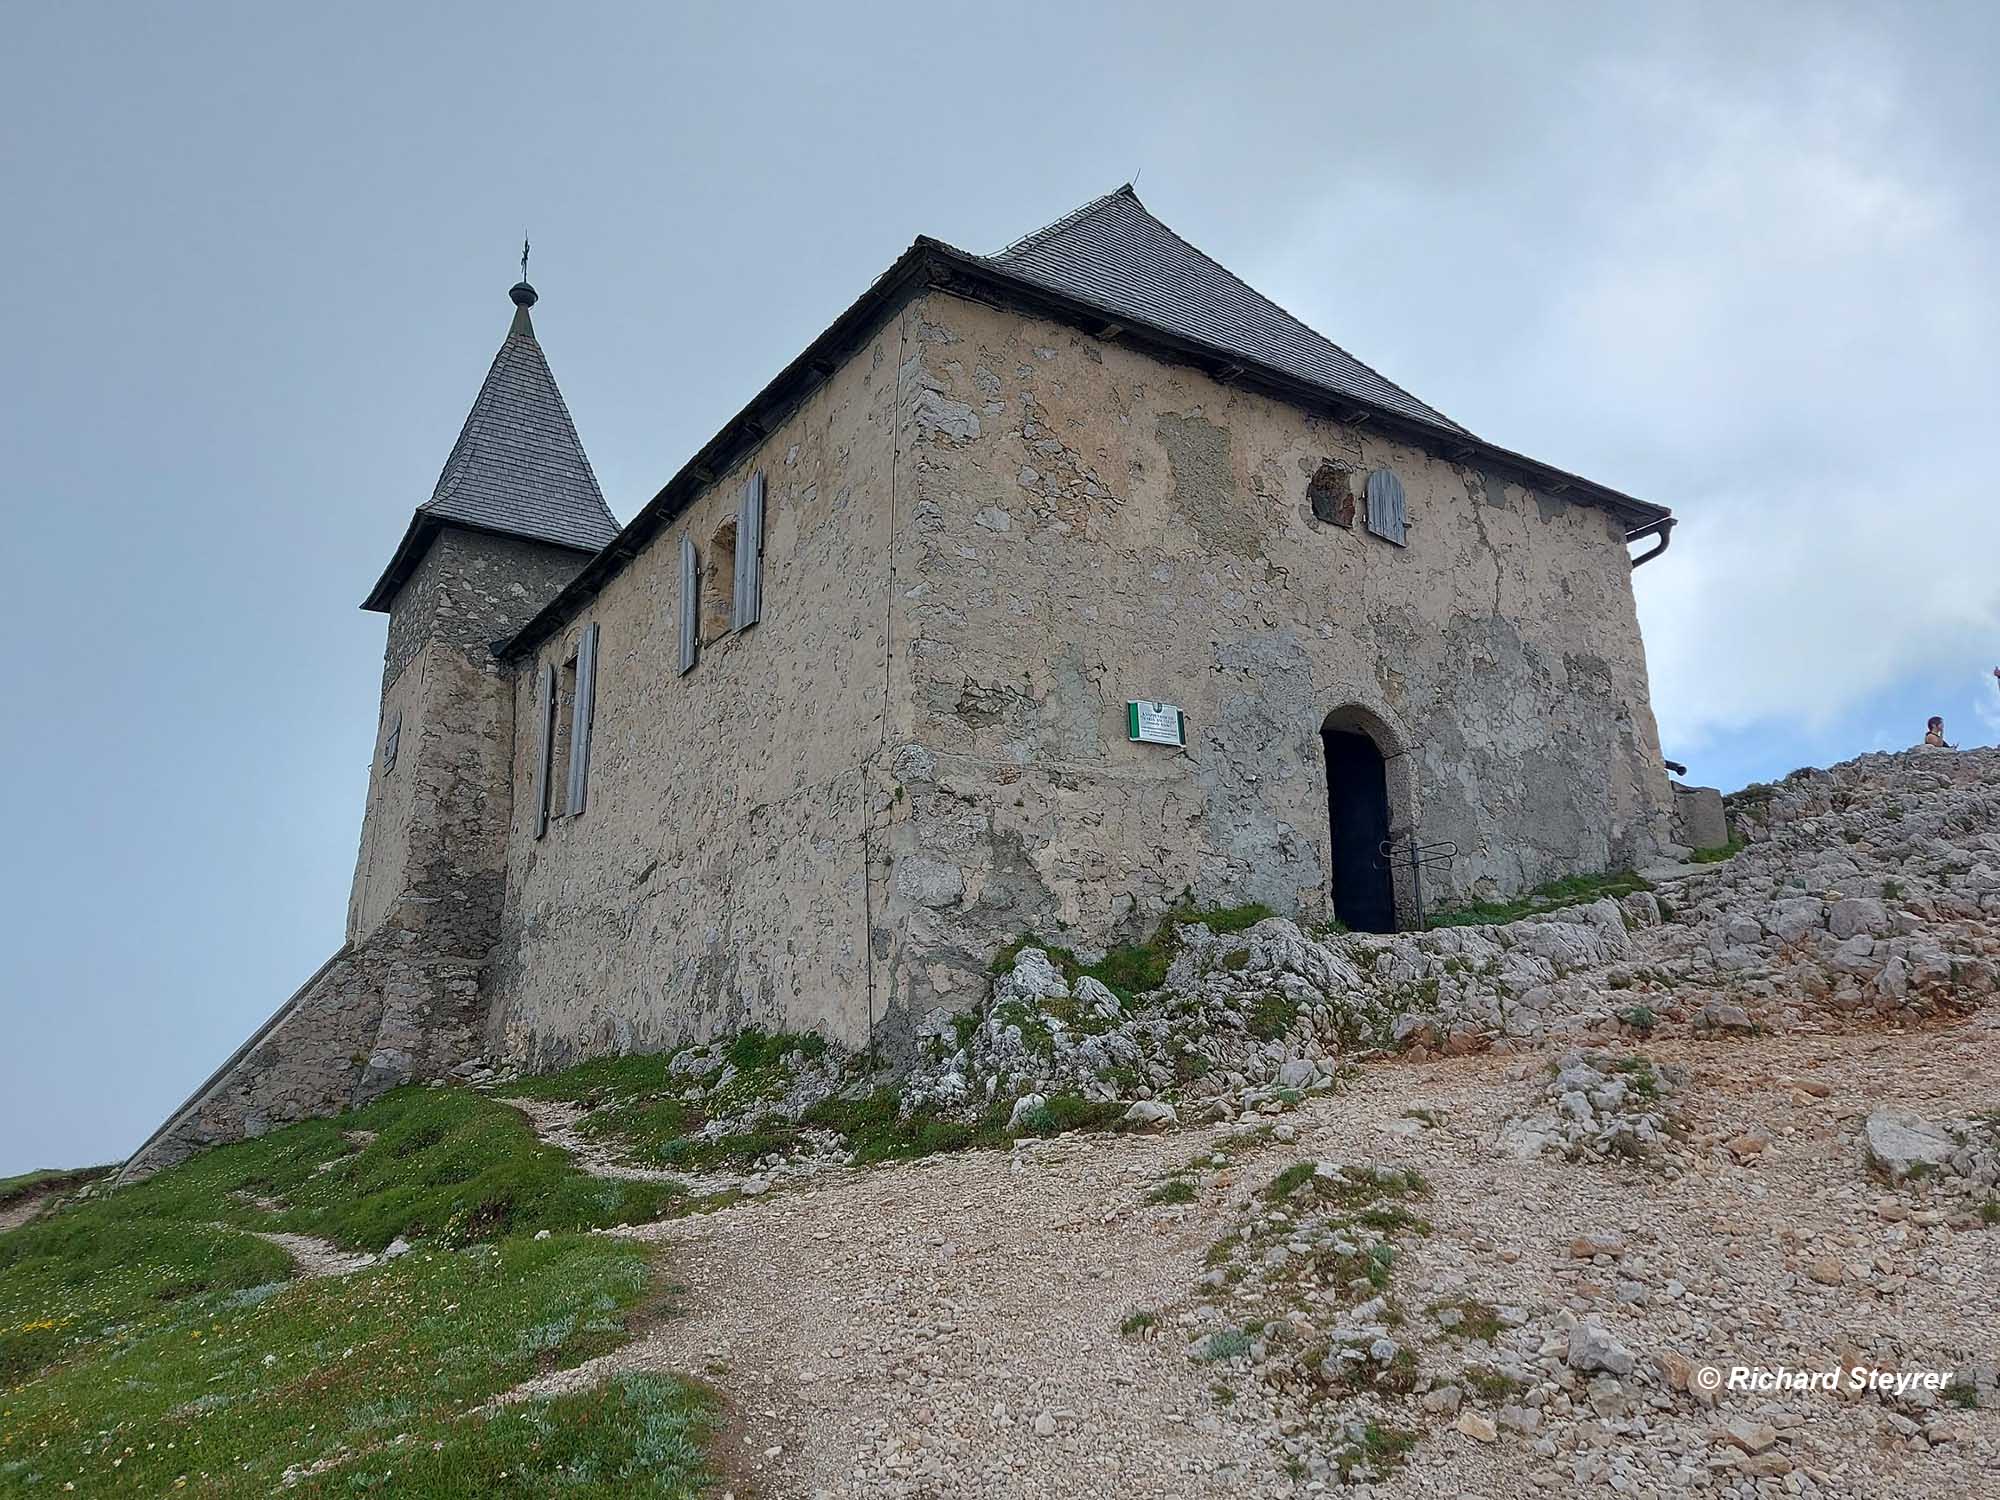 Aufstieg zur Knappenkirche "Maria am Stein" am Dobratsch